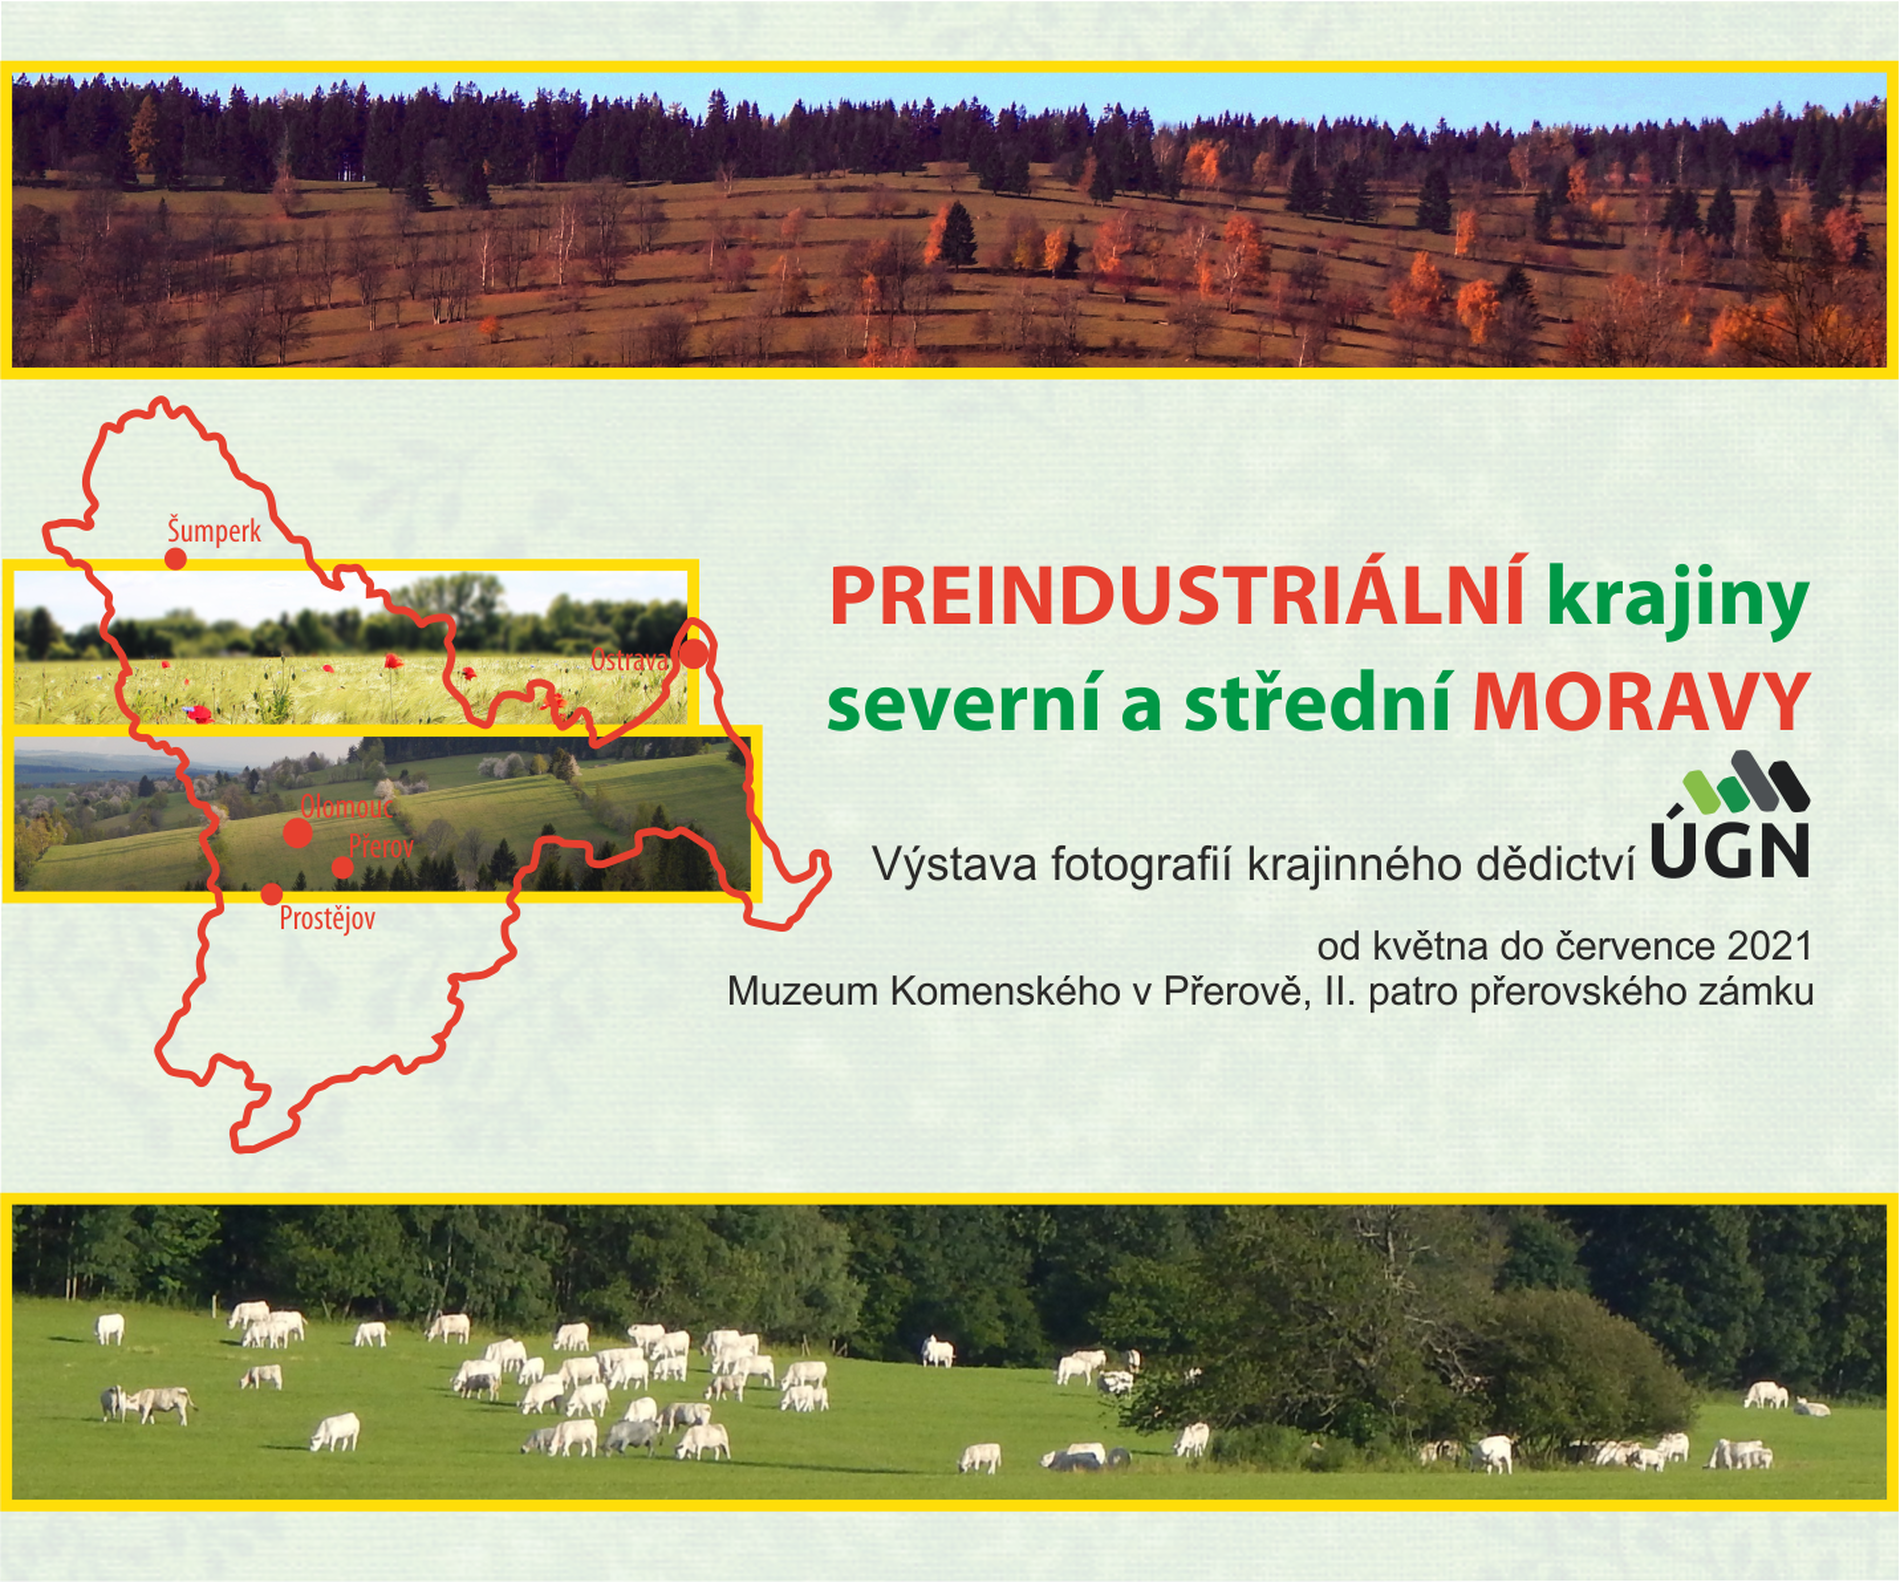 Preindustriální krajiny severní a střední Moravy